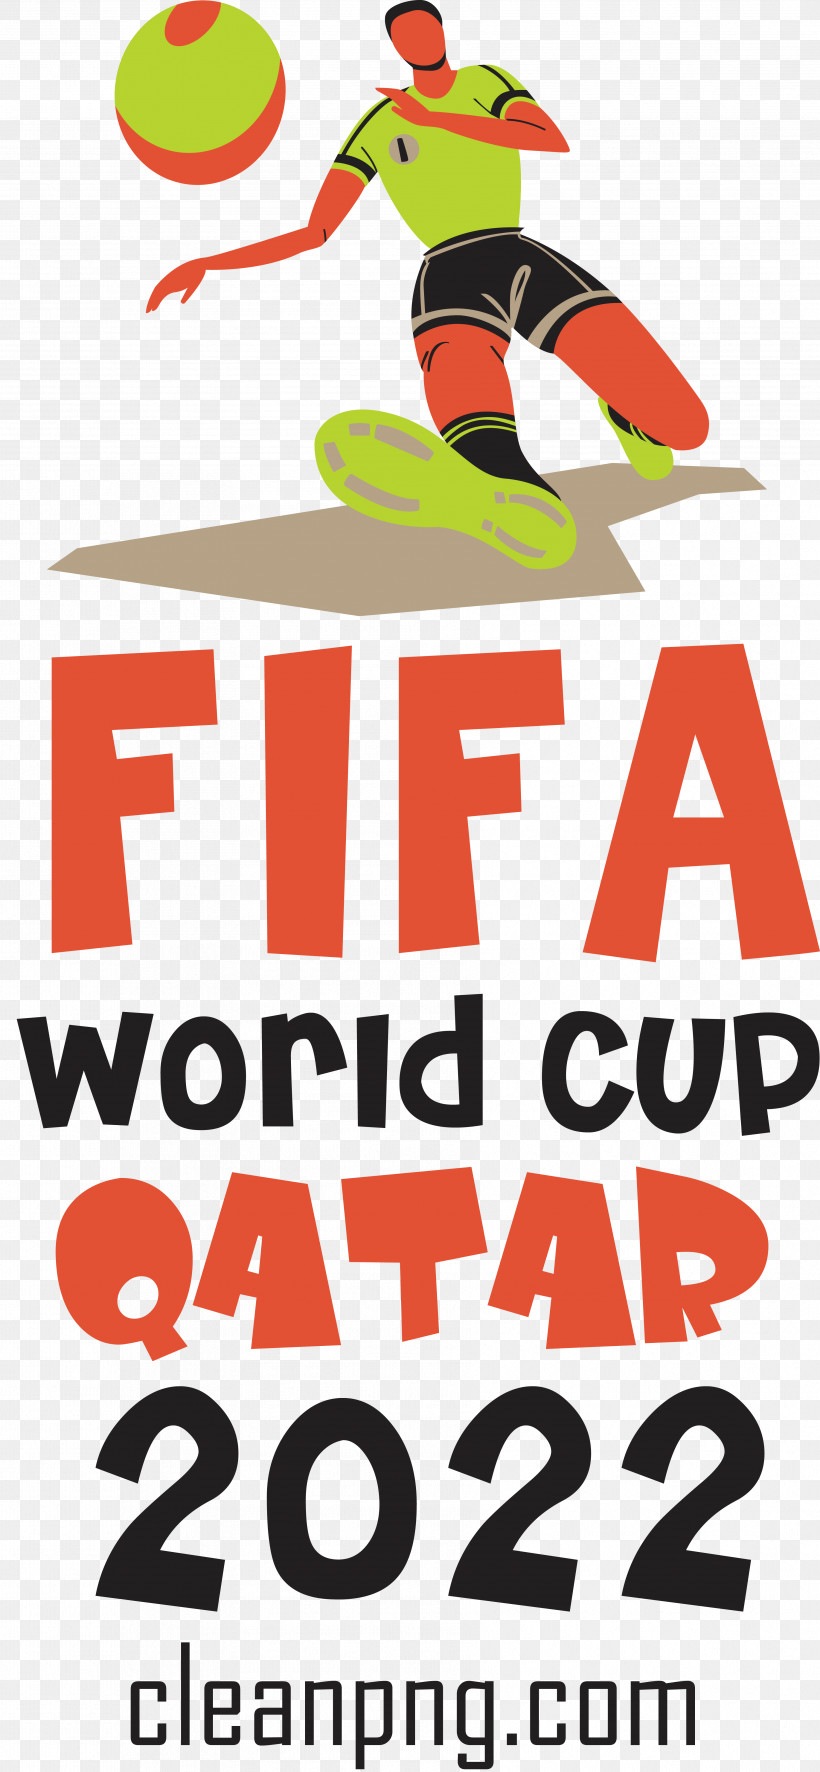 Fifa World Cup Qatar 2022 Fifa World Cup Qatar Football Soccer, PNG, 3562x7699px, Fifa World Cup Qatar 2022, Fifa World Cup, Football, Qatar, Soccer Download Free